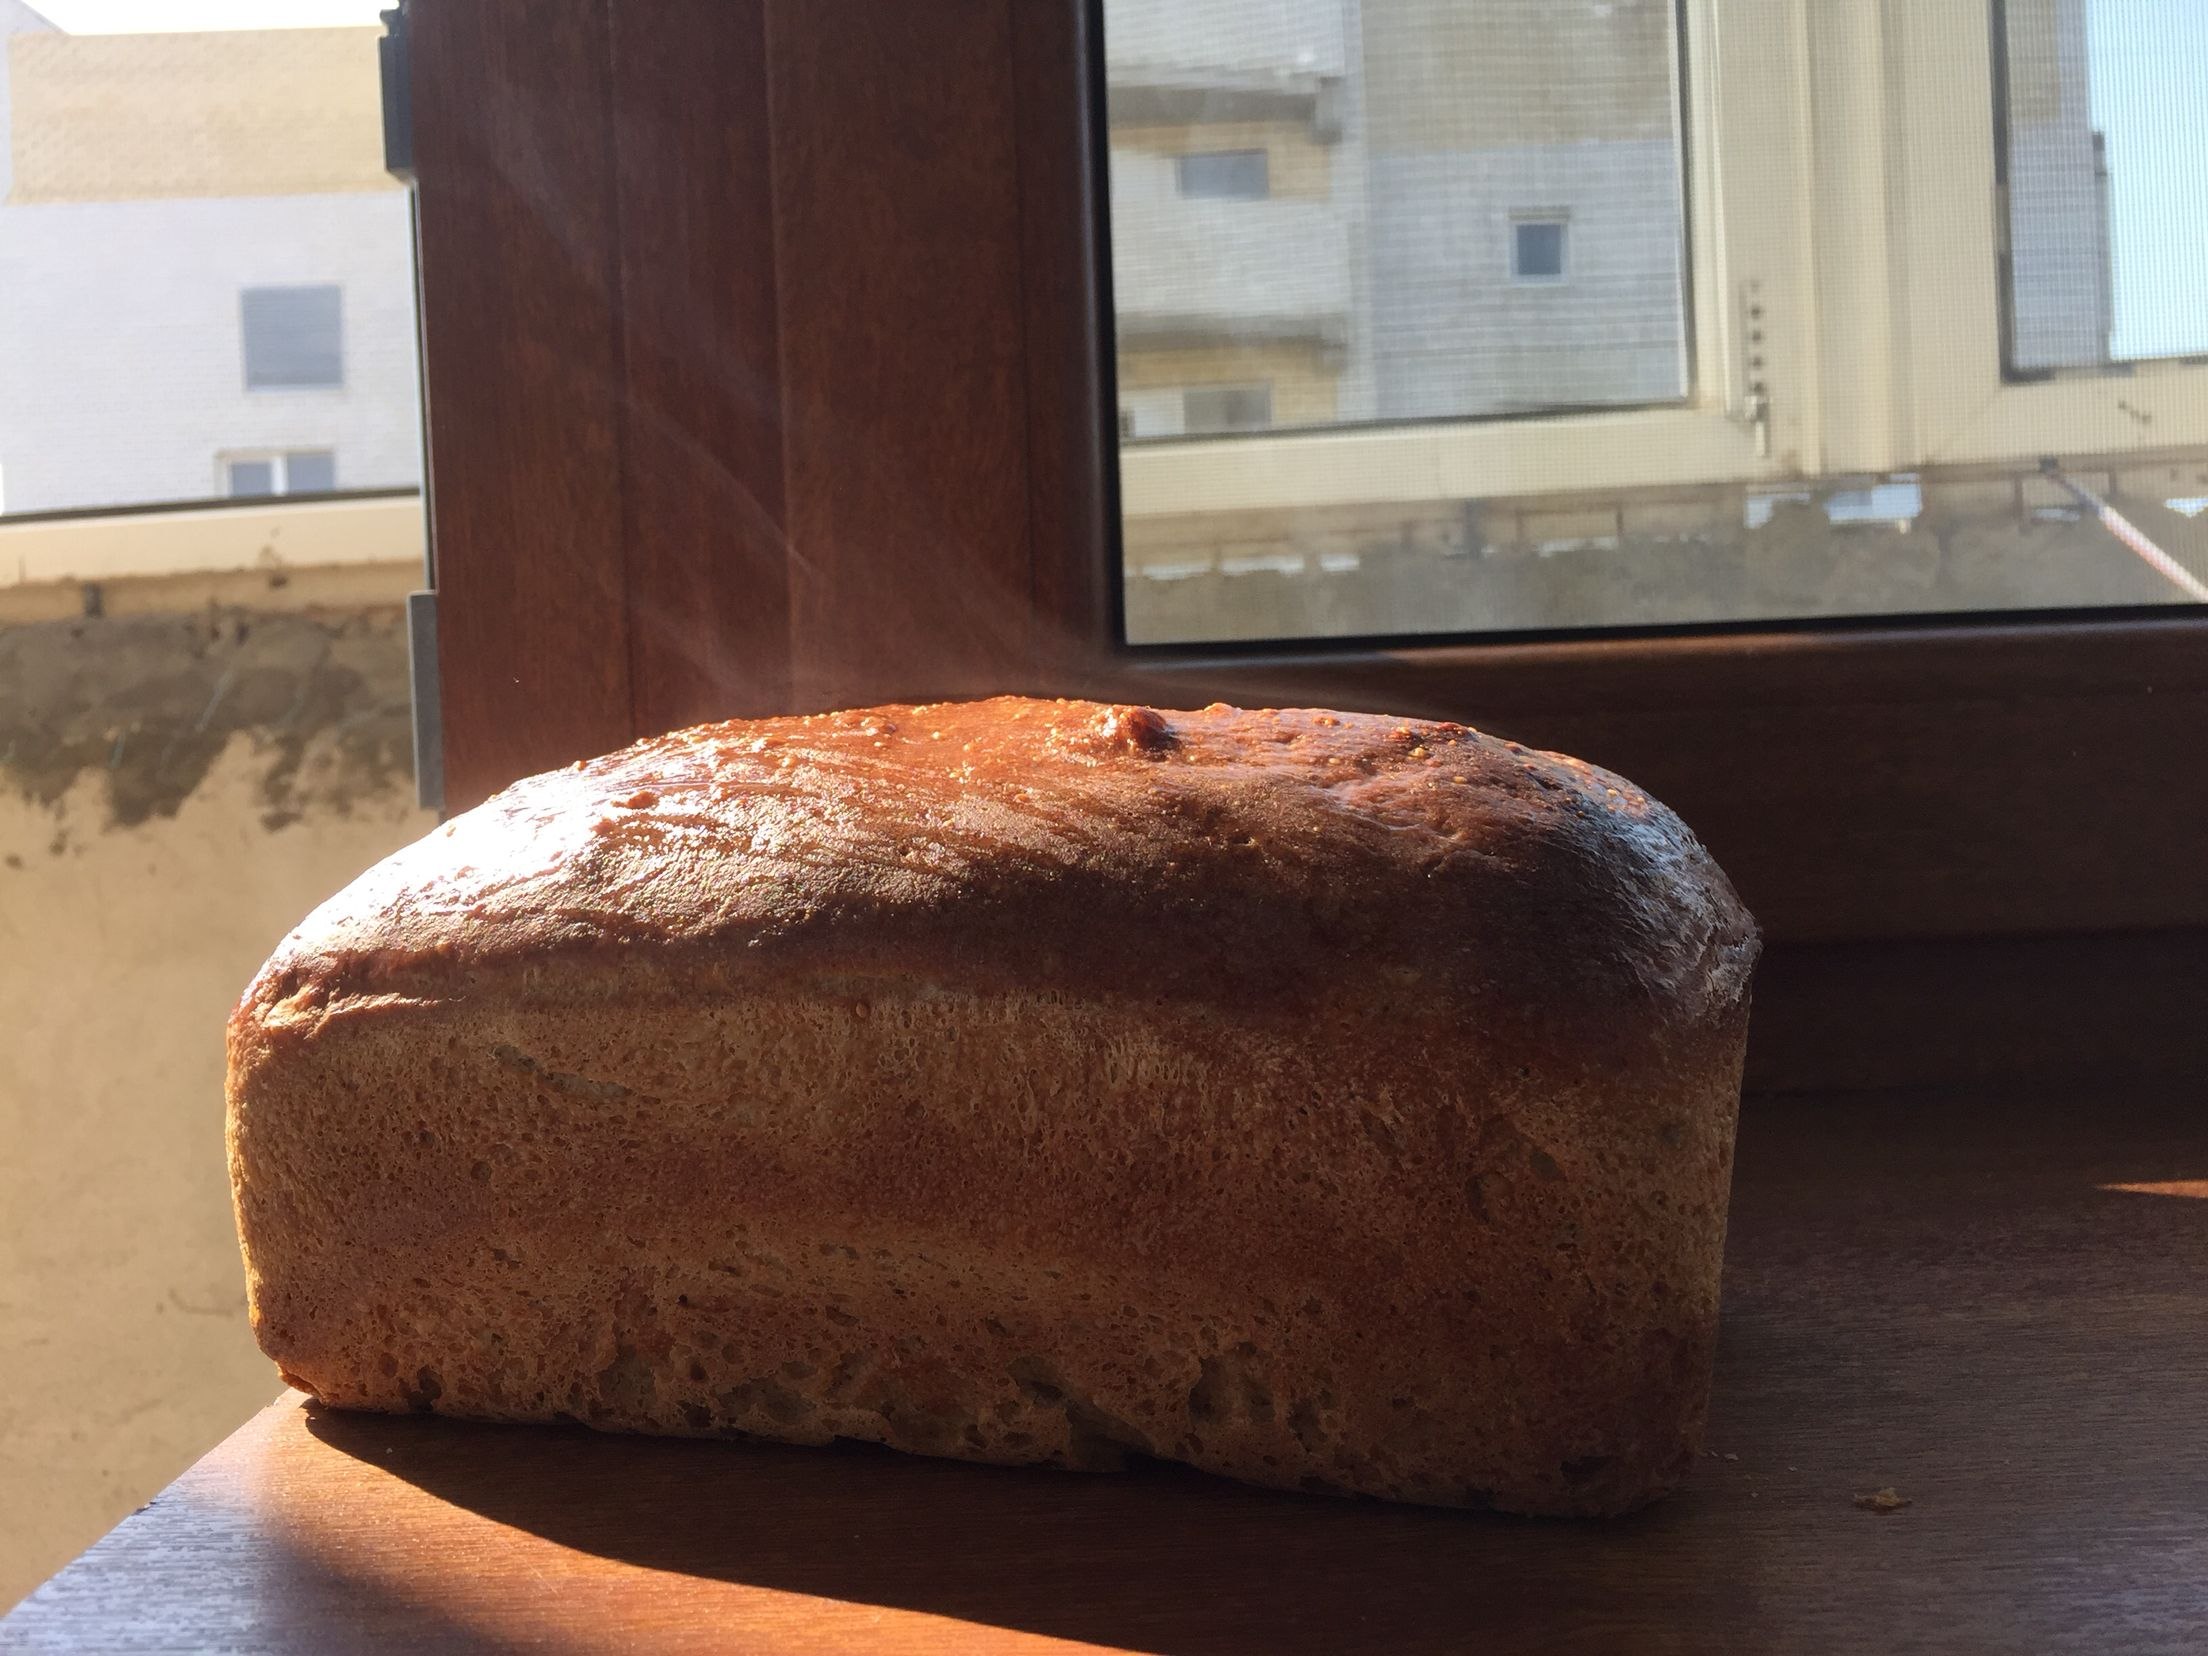 Заварка для хлеба. Литовский хлеб на закваске. Хлеб на литовском языке. Каширахлеб хлеб Литовский. Литовский хлеб на закваске в Грузии.